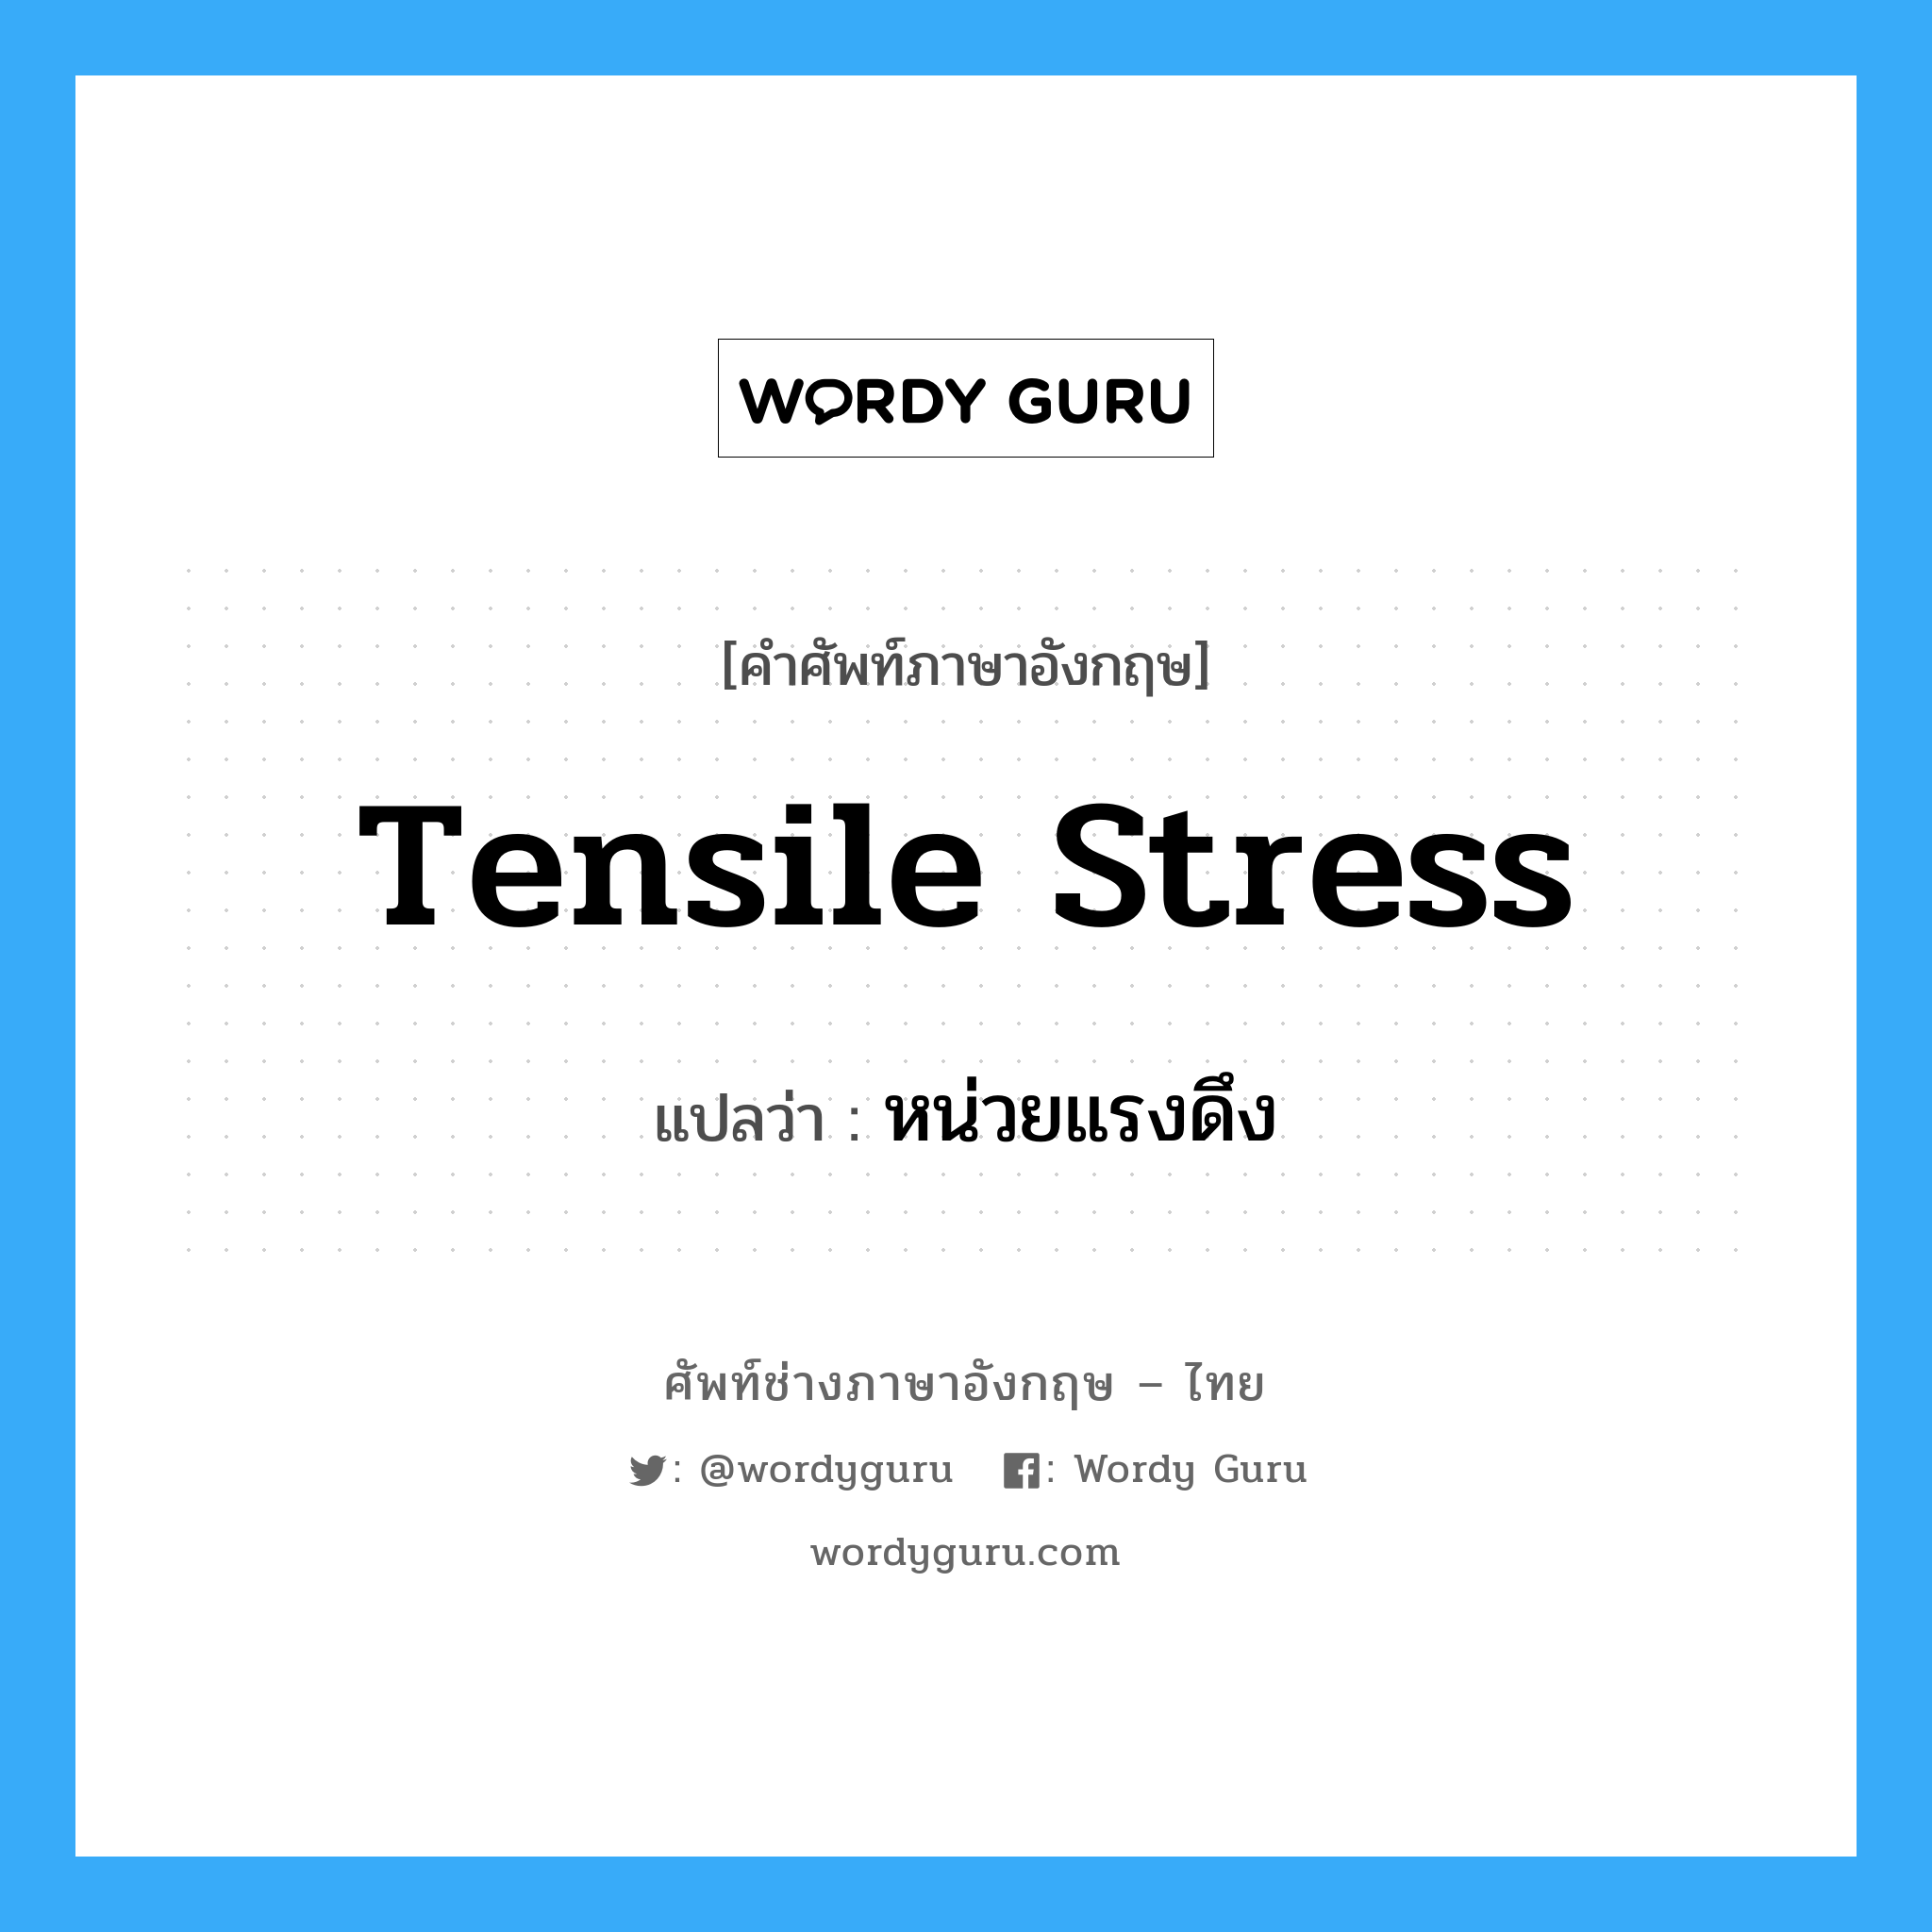 tensile stress แปลว่า?, คำศัพท์ช่างภาษาอังกฤษ - ไทย tensile stress คำศัพท์ภาษาอังกฤษ tensile stress แปลว่า หน่วยแรงดึง